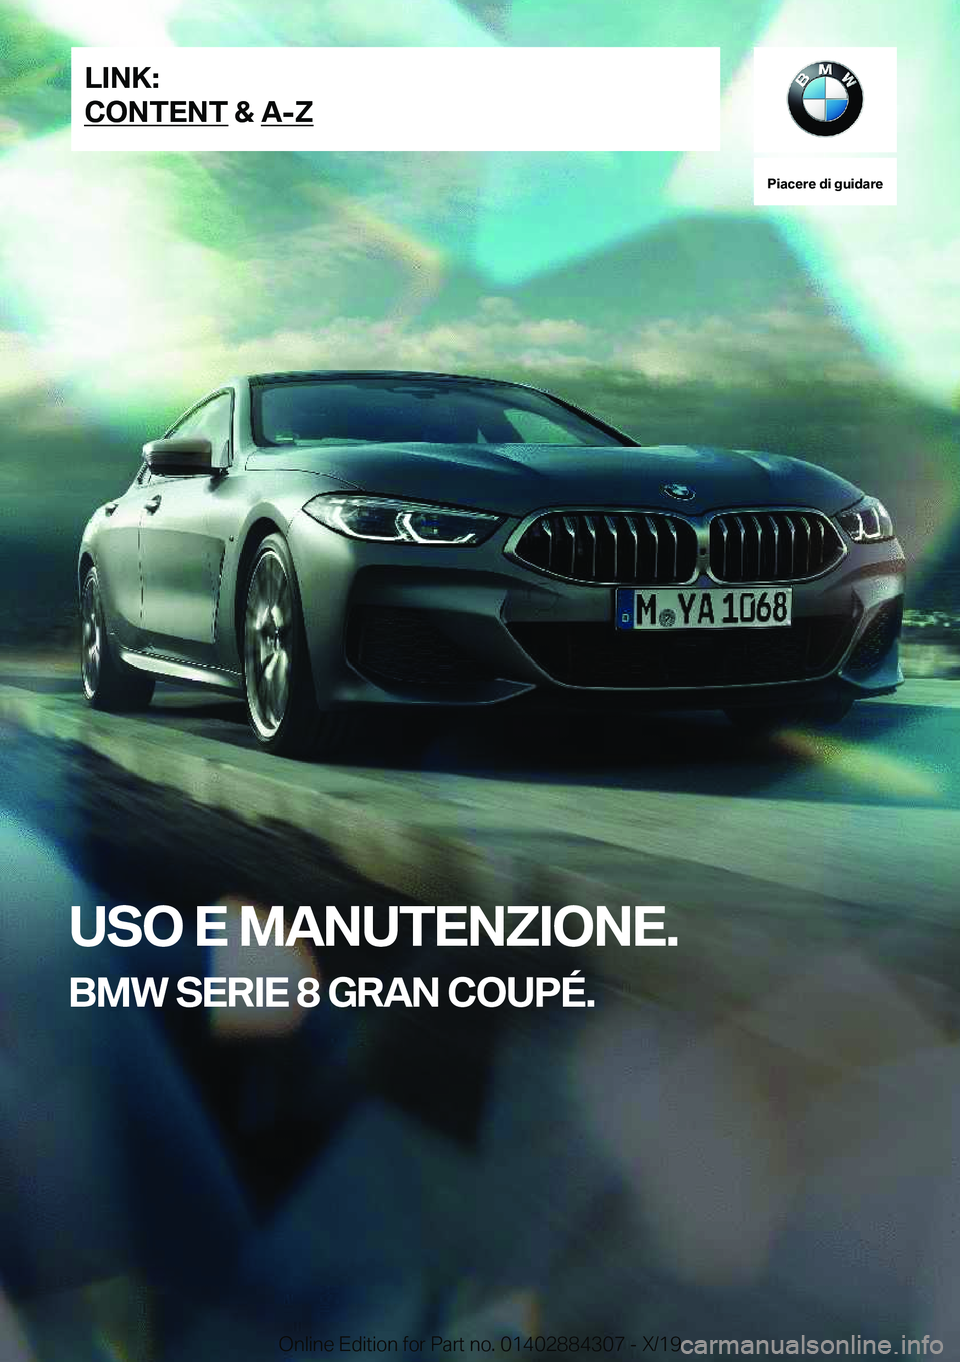 BMW 8 SERIES GRAN COUPE 2020  Libretti Di Uso E manutenzione (in Italian) �P�i�a�c�e�r�e��d�i��g�u�i�d�a�r�e
�U�S�O��E��M�A�N�U�T�E�N�Z�I�O�N�E�.
�B�M�W��S�E�R�I�E��8��G�R�A�N��C�O�U�P�